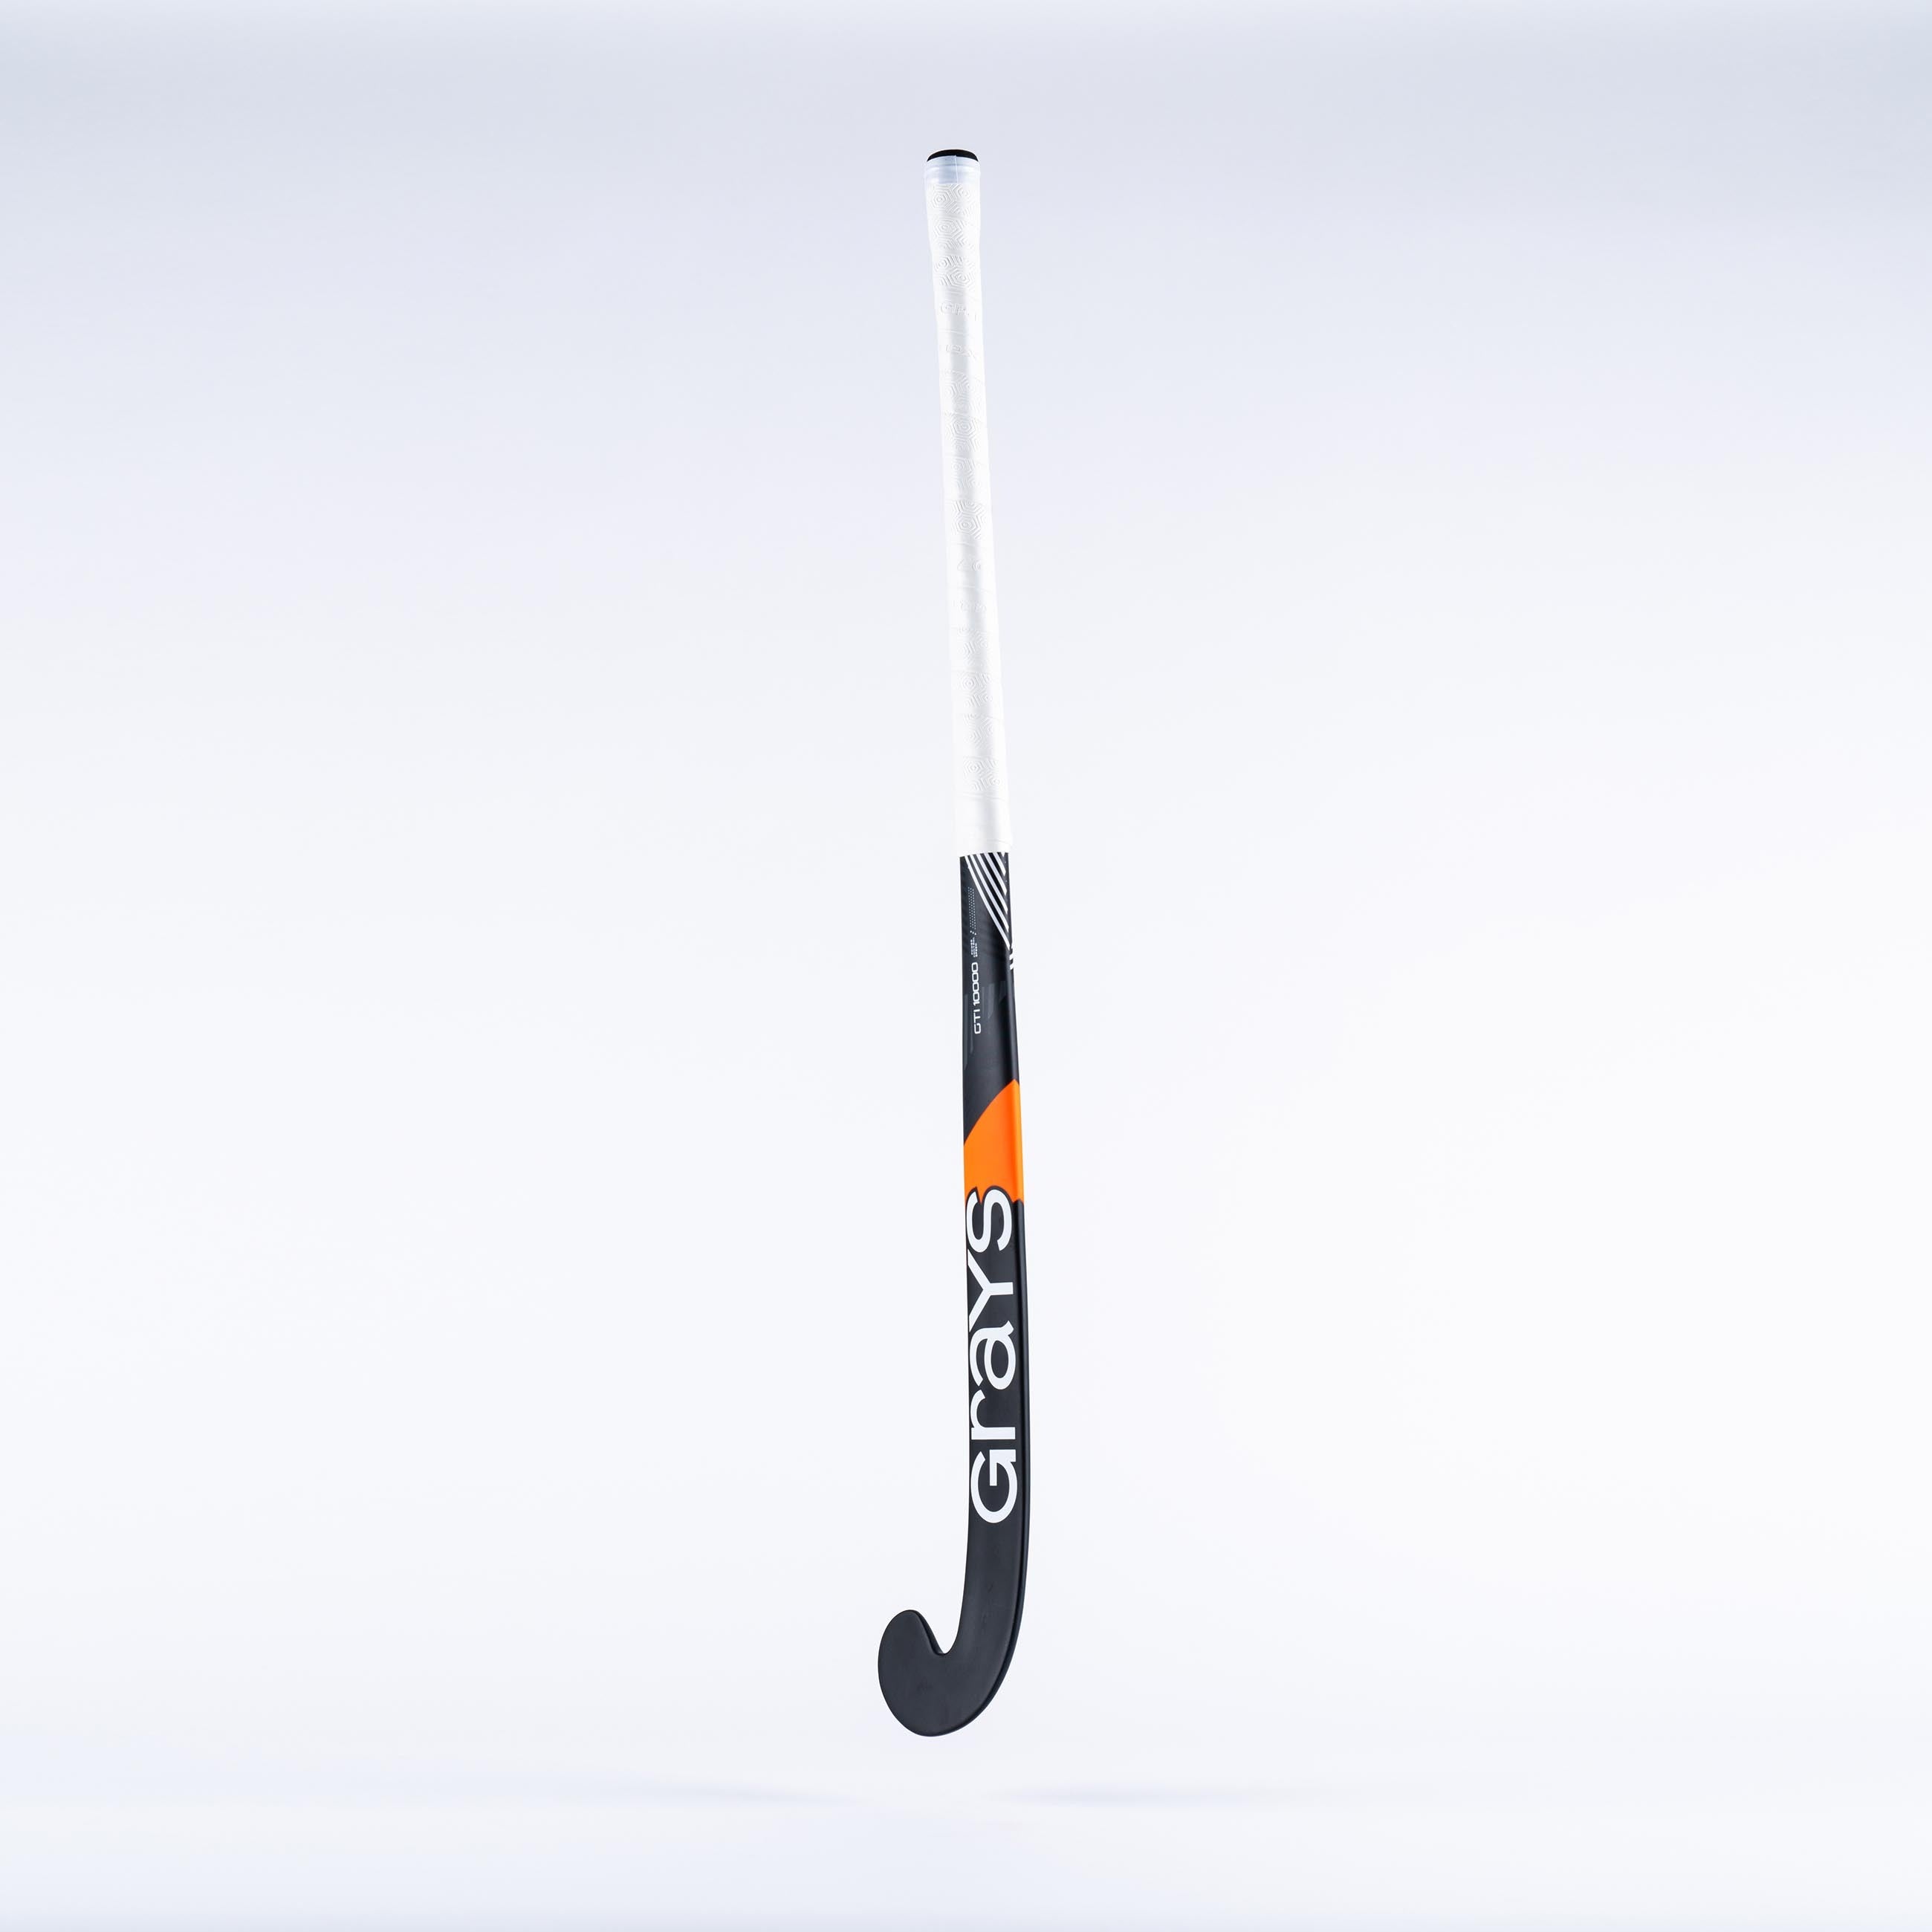 GTI10000 Probow composite indoor hockeystick